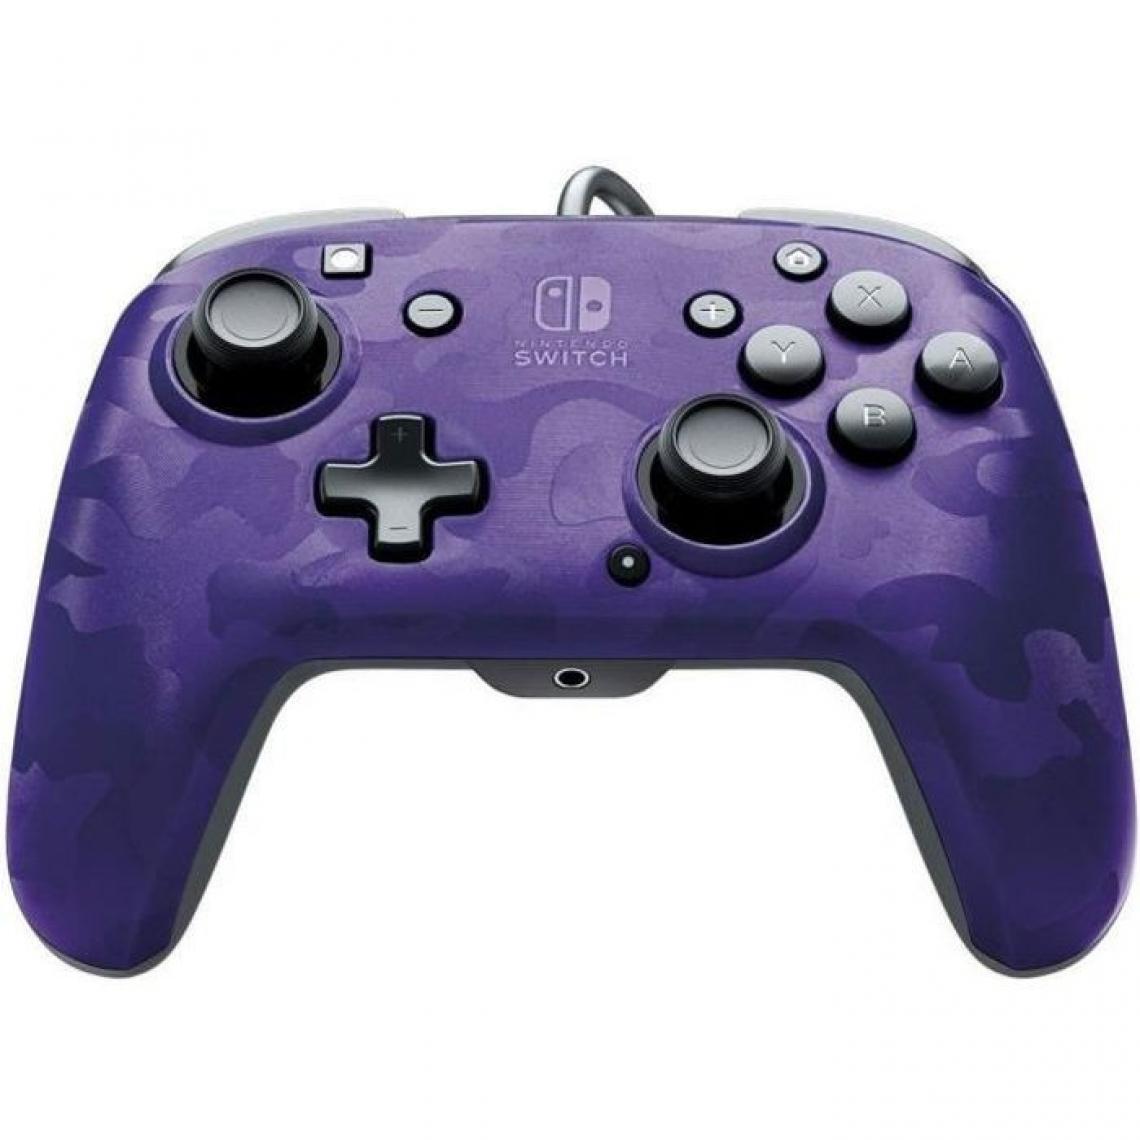 PDP - PDP Afterglow Manette Filaire Camouflage Violet Pour Nintendo Switch - Licence Officielle - Port Jack Audio - Joystick